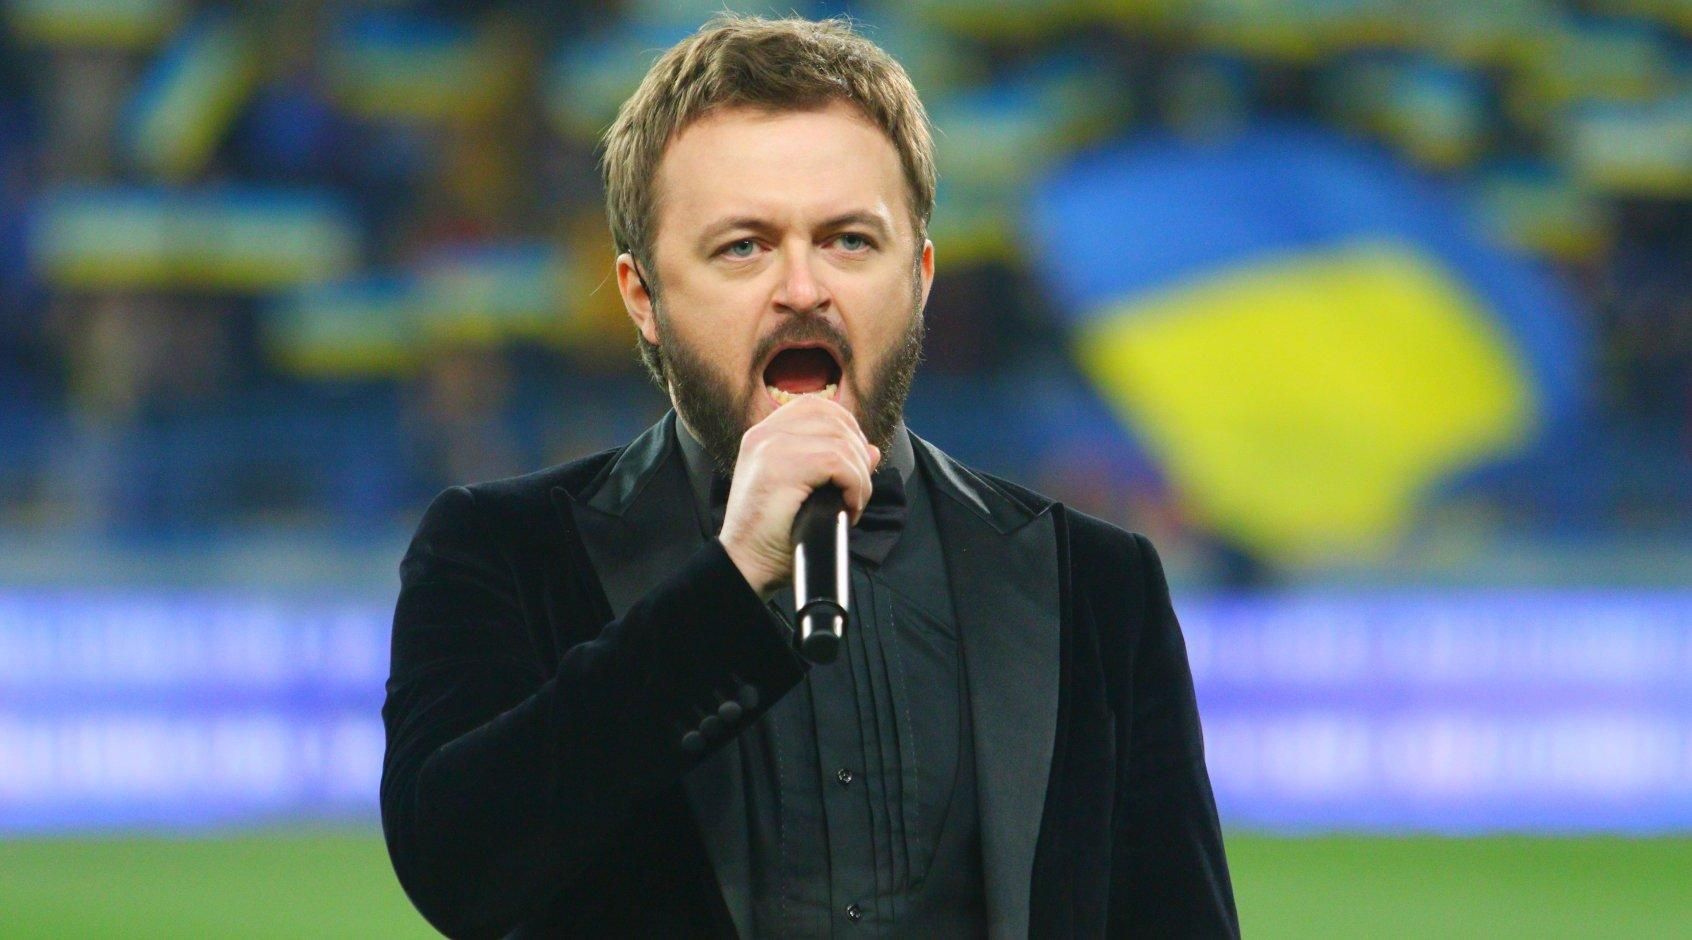 Дзіздьо виконає гімн України на "Арені Львів" перед матчем з боснійцями - Спорт 24